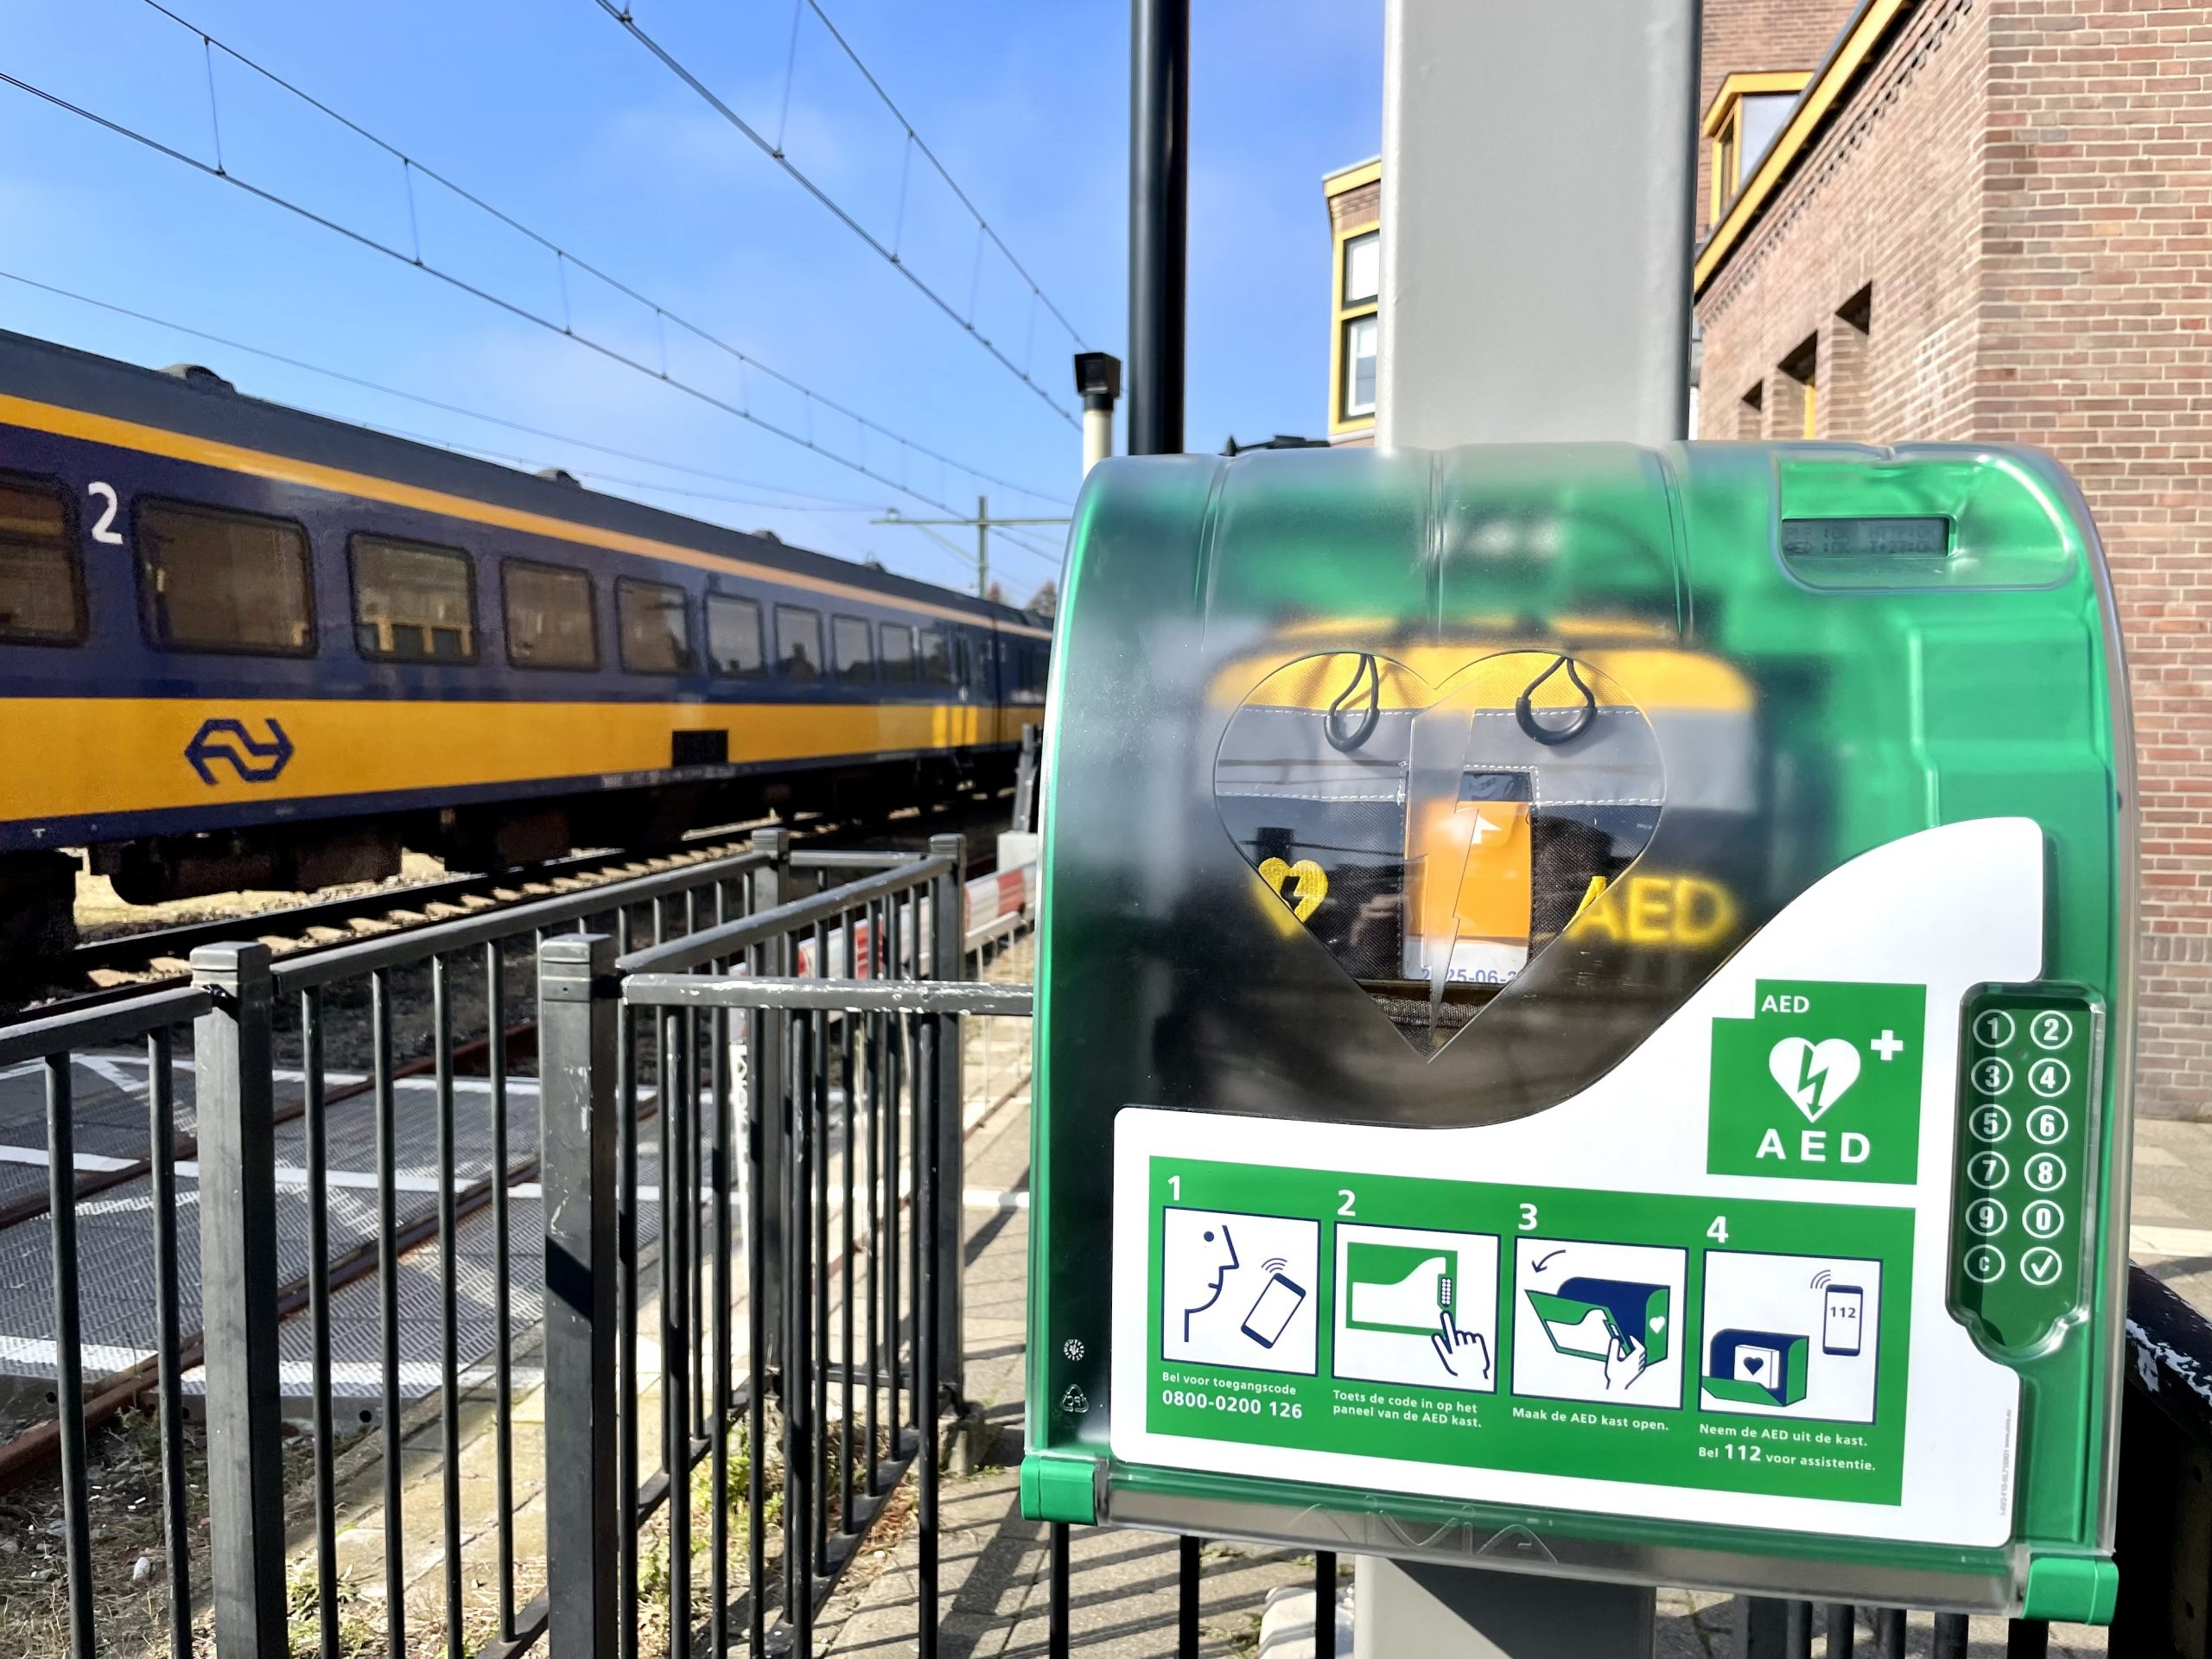 Steeds meer stations in Nederland voorzien van AED